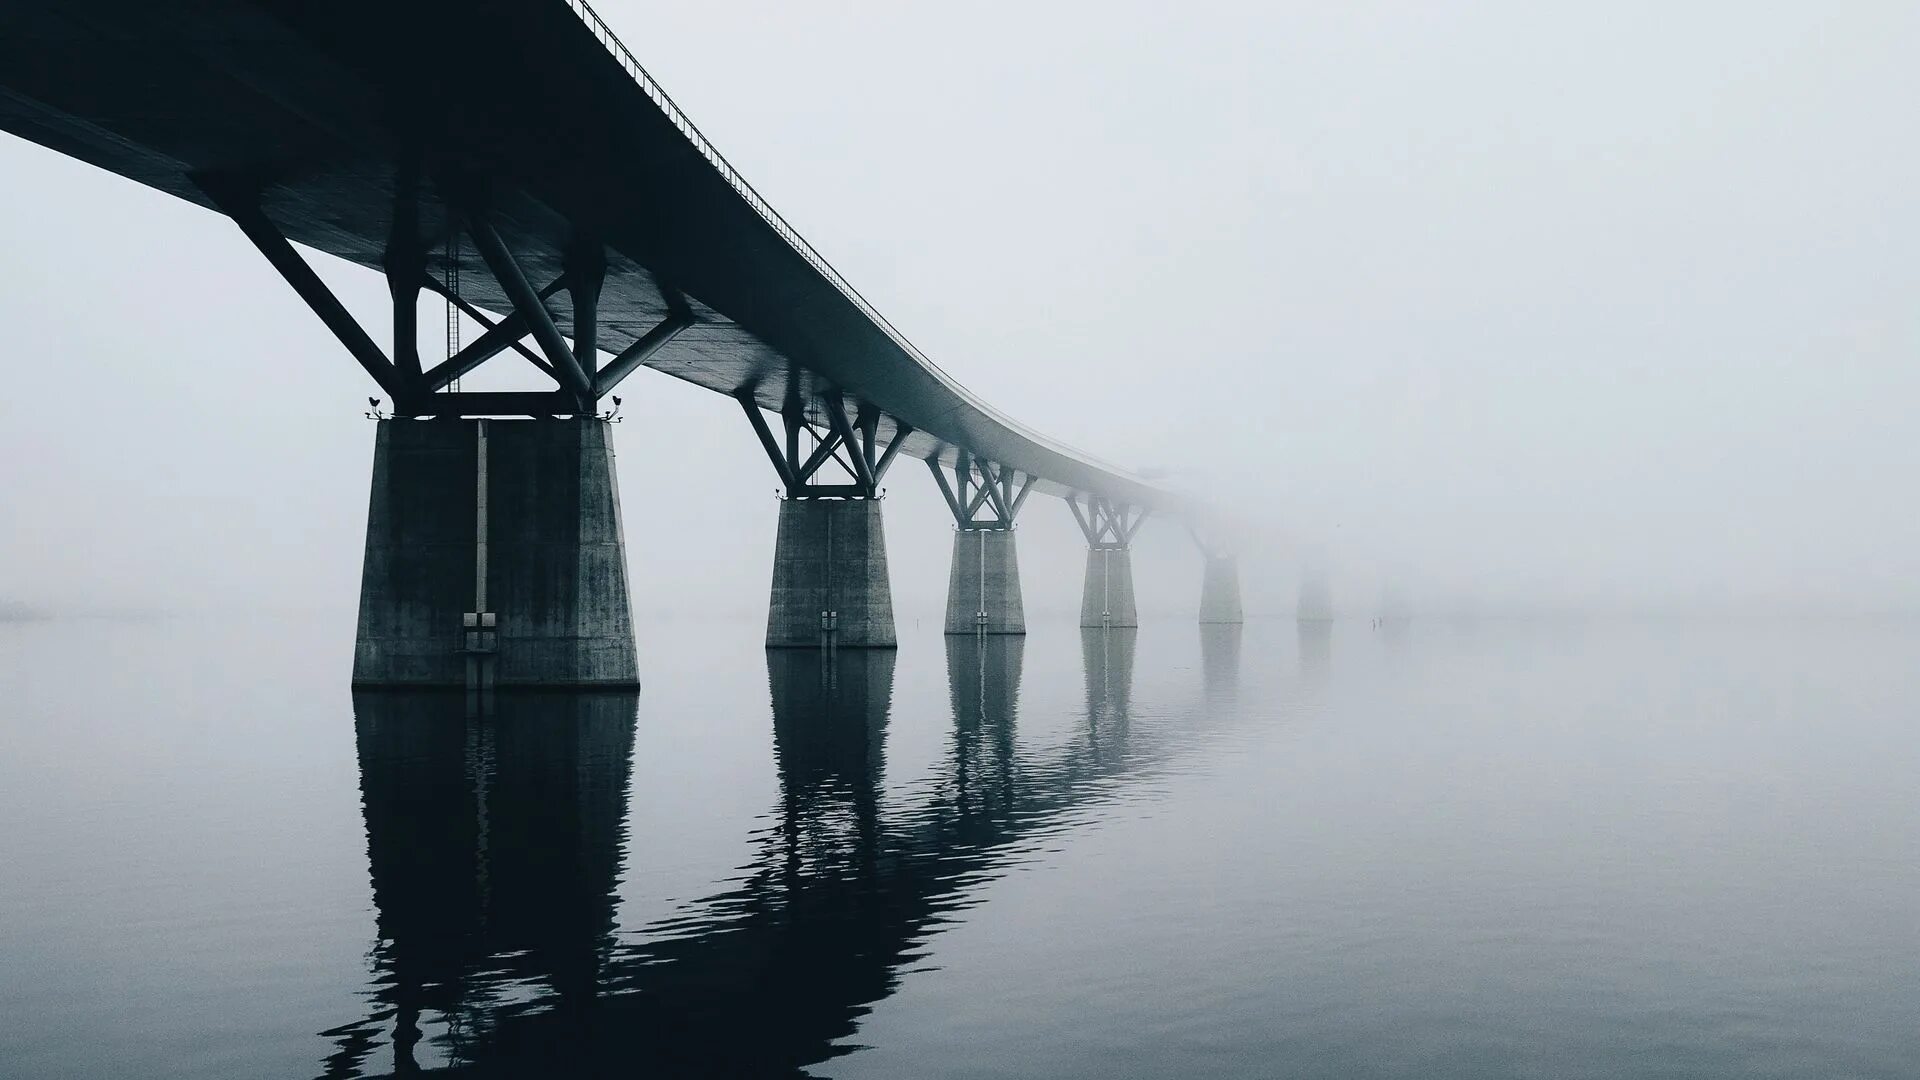 Мост на воде. Отражение моста в воде. Отражение в воде мостика. Вода мост туман. Мост через час